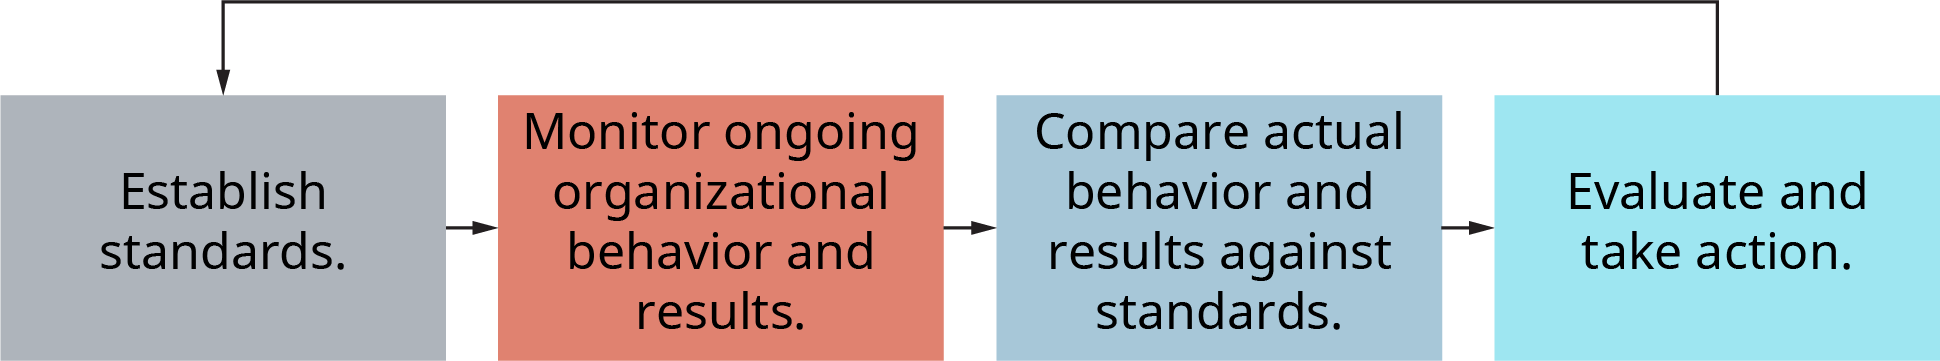 Un diagrama ilustra el modelo de control tradicional de cuatro pasos.